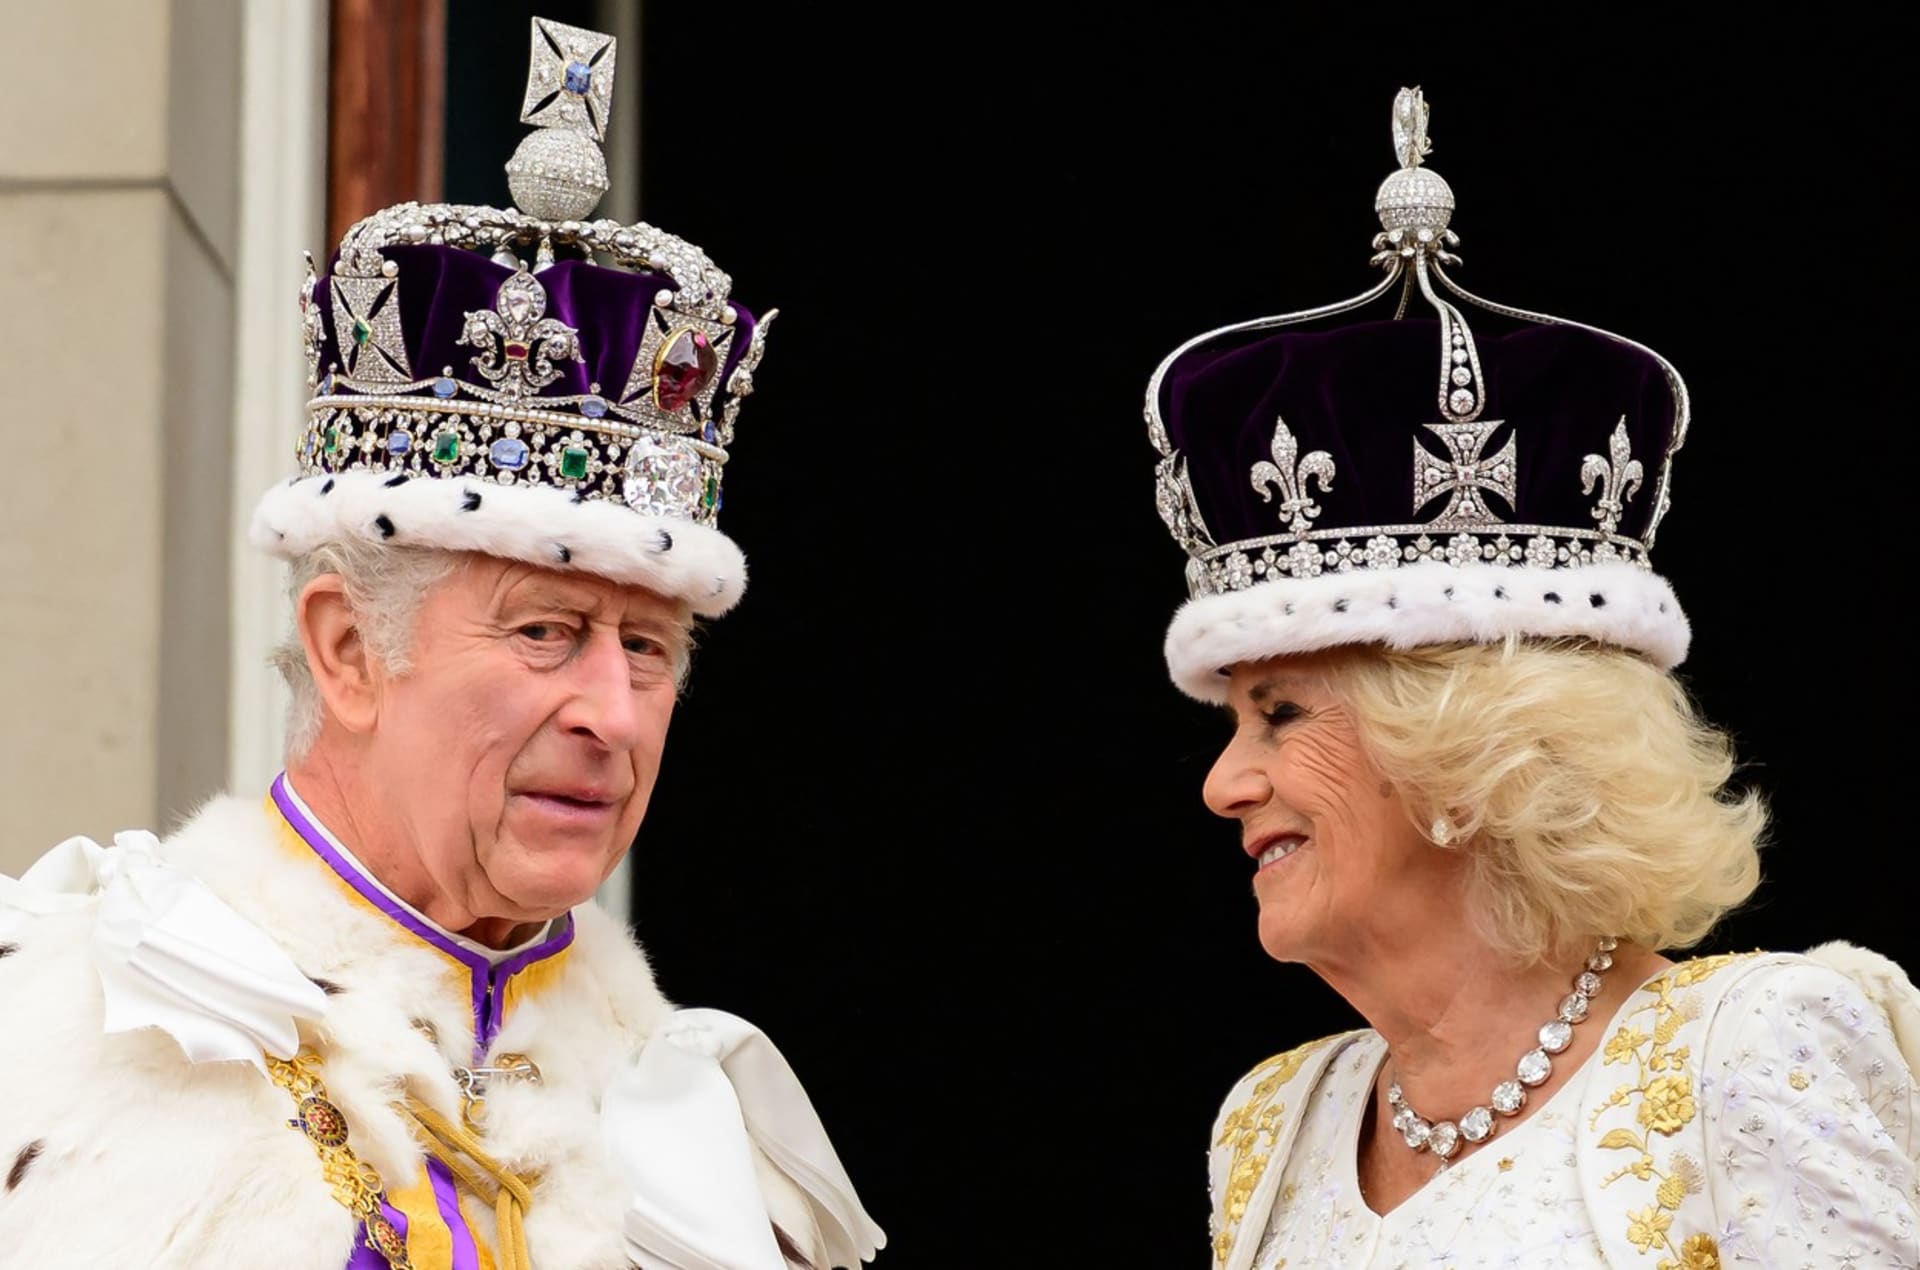 Král Karel III. prý během korunovace vyjádřil svou nespokojenost s tím, že některé prvky ceremonie byly moc dlouhé. 